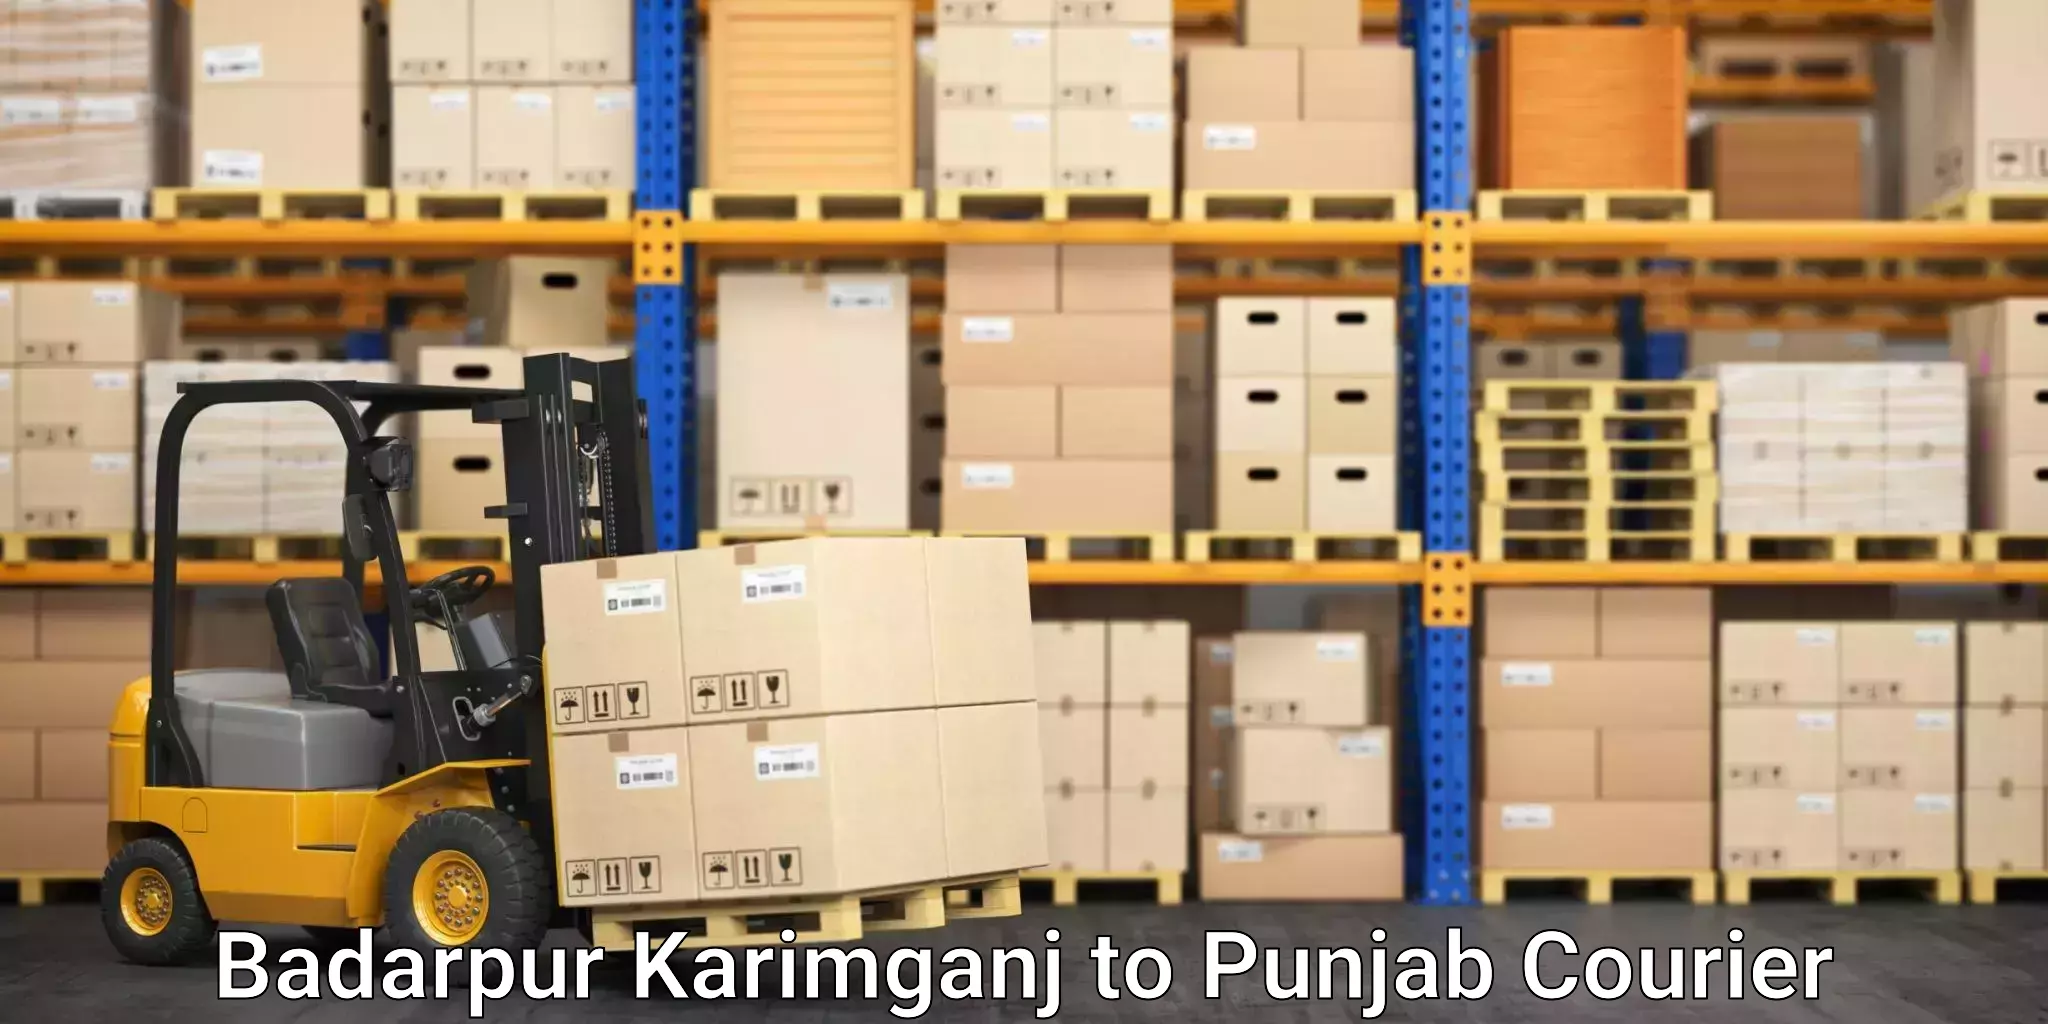 High-efficiency logistics Badarpur Karimganj to Anandpur Sahib